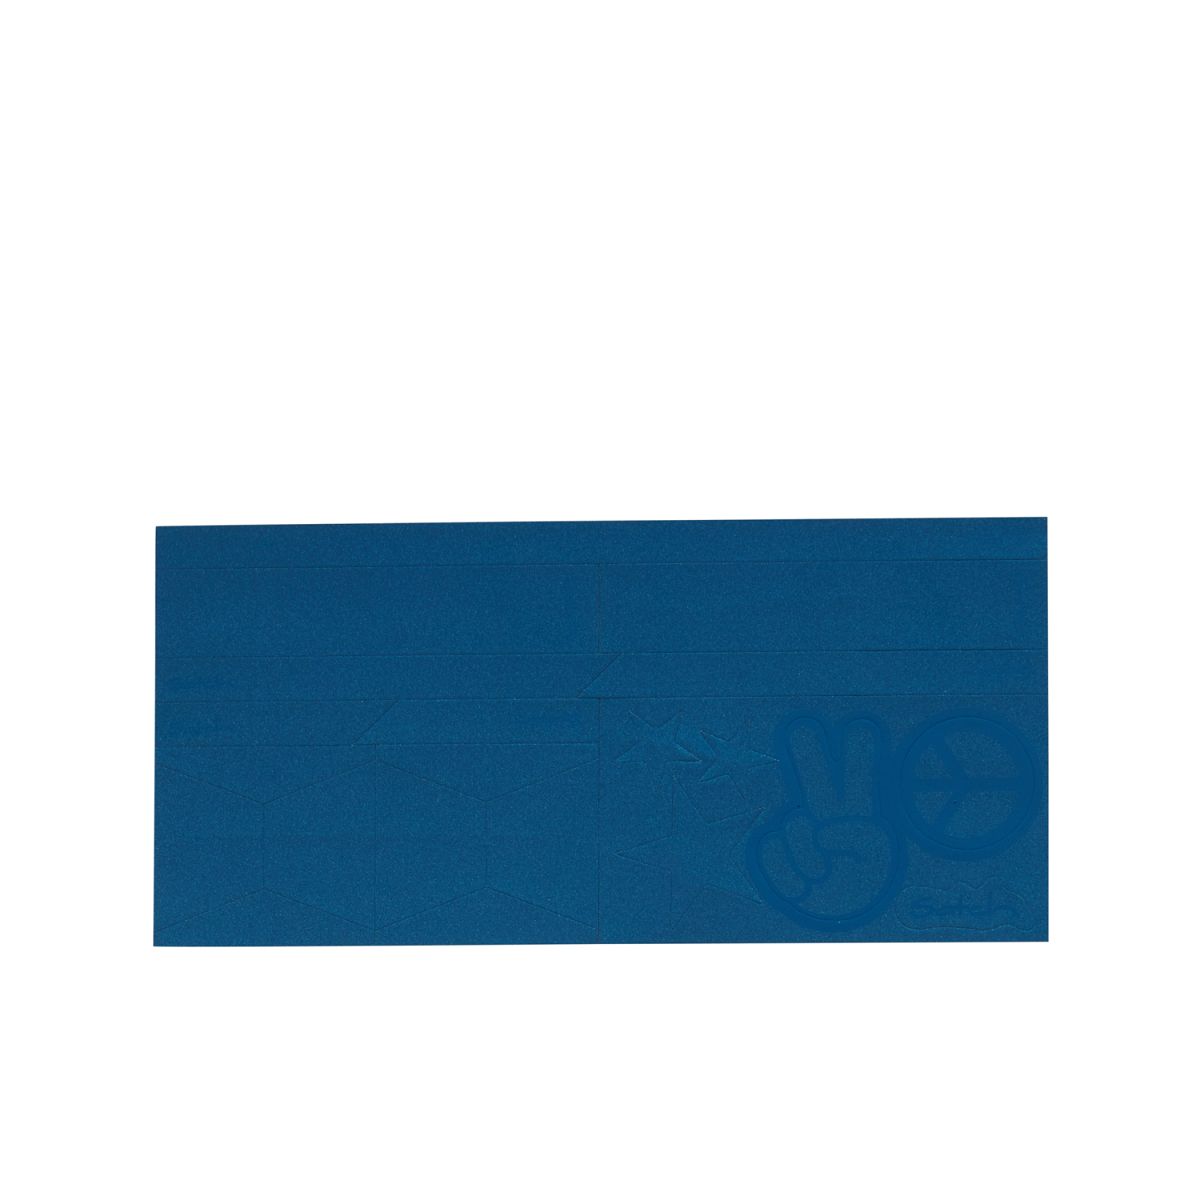 Reflective Sticker blau SAT-RST-001-313